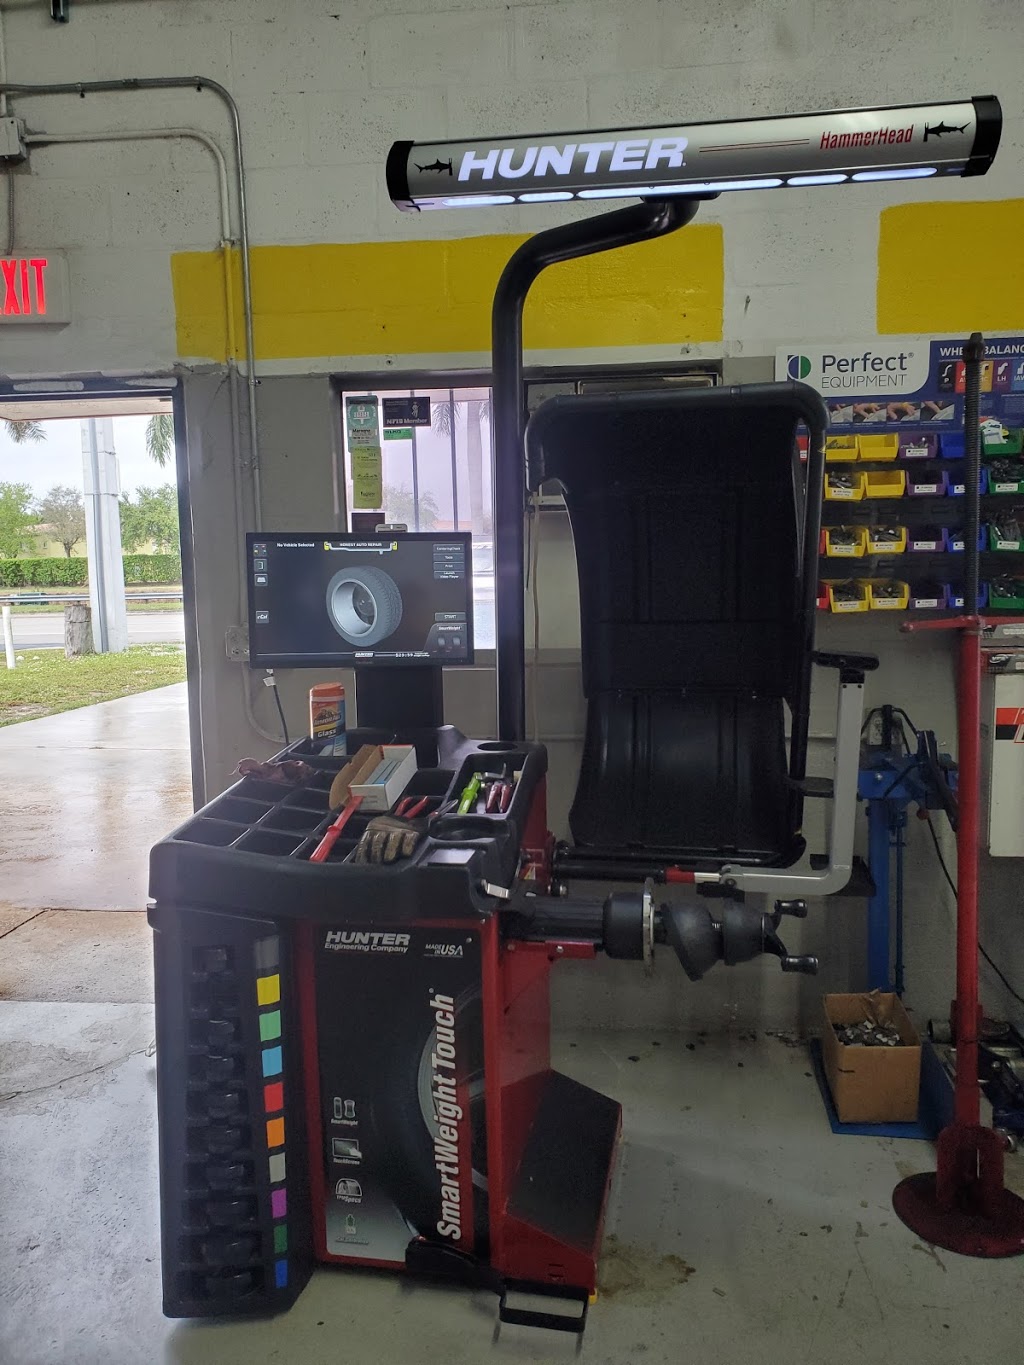 Honest auto repair center | 1825 SW 101st Ave, Miramar, FL 33025, USA | Phone: (954) 251-3285